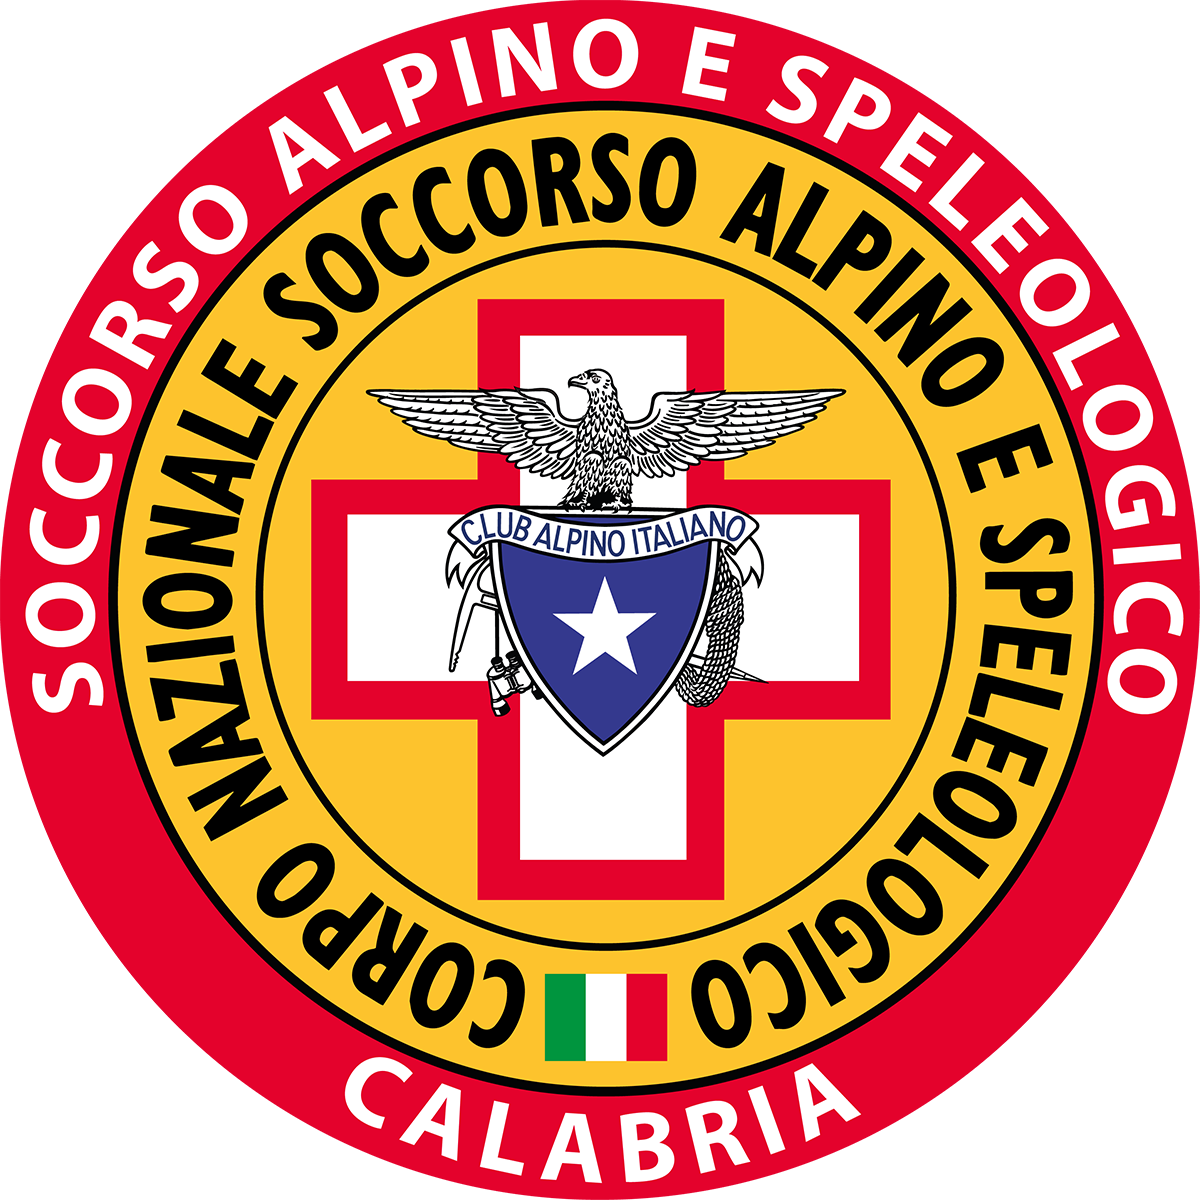 Soccorso Alpino e Speleologico Calabria